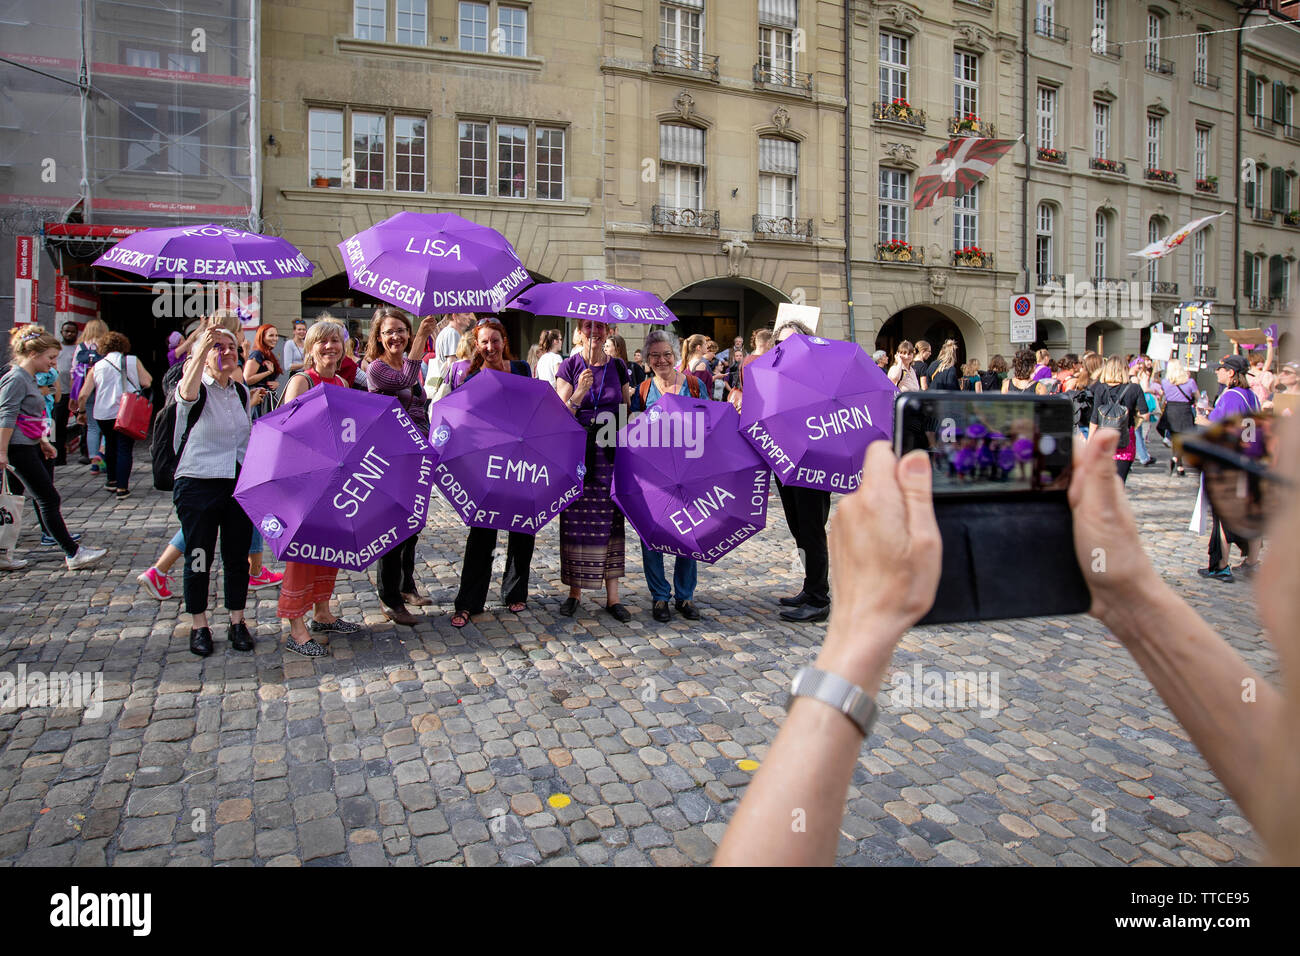 Le donne del gruppo 'FAM gegen Rasissmus' posano per una foto durante la Frauenstreik marzo a Berna. Il Frauenstreik - Womens sciopero - ha portato un numero record di donne per le strade in tutte le grandi città in Svizzera. In Campidoglio Berna, più di 40.000 hanno marciato in tutta la città alla lotta per la parità tra i sessi. Foto Stock